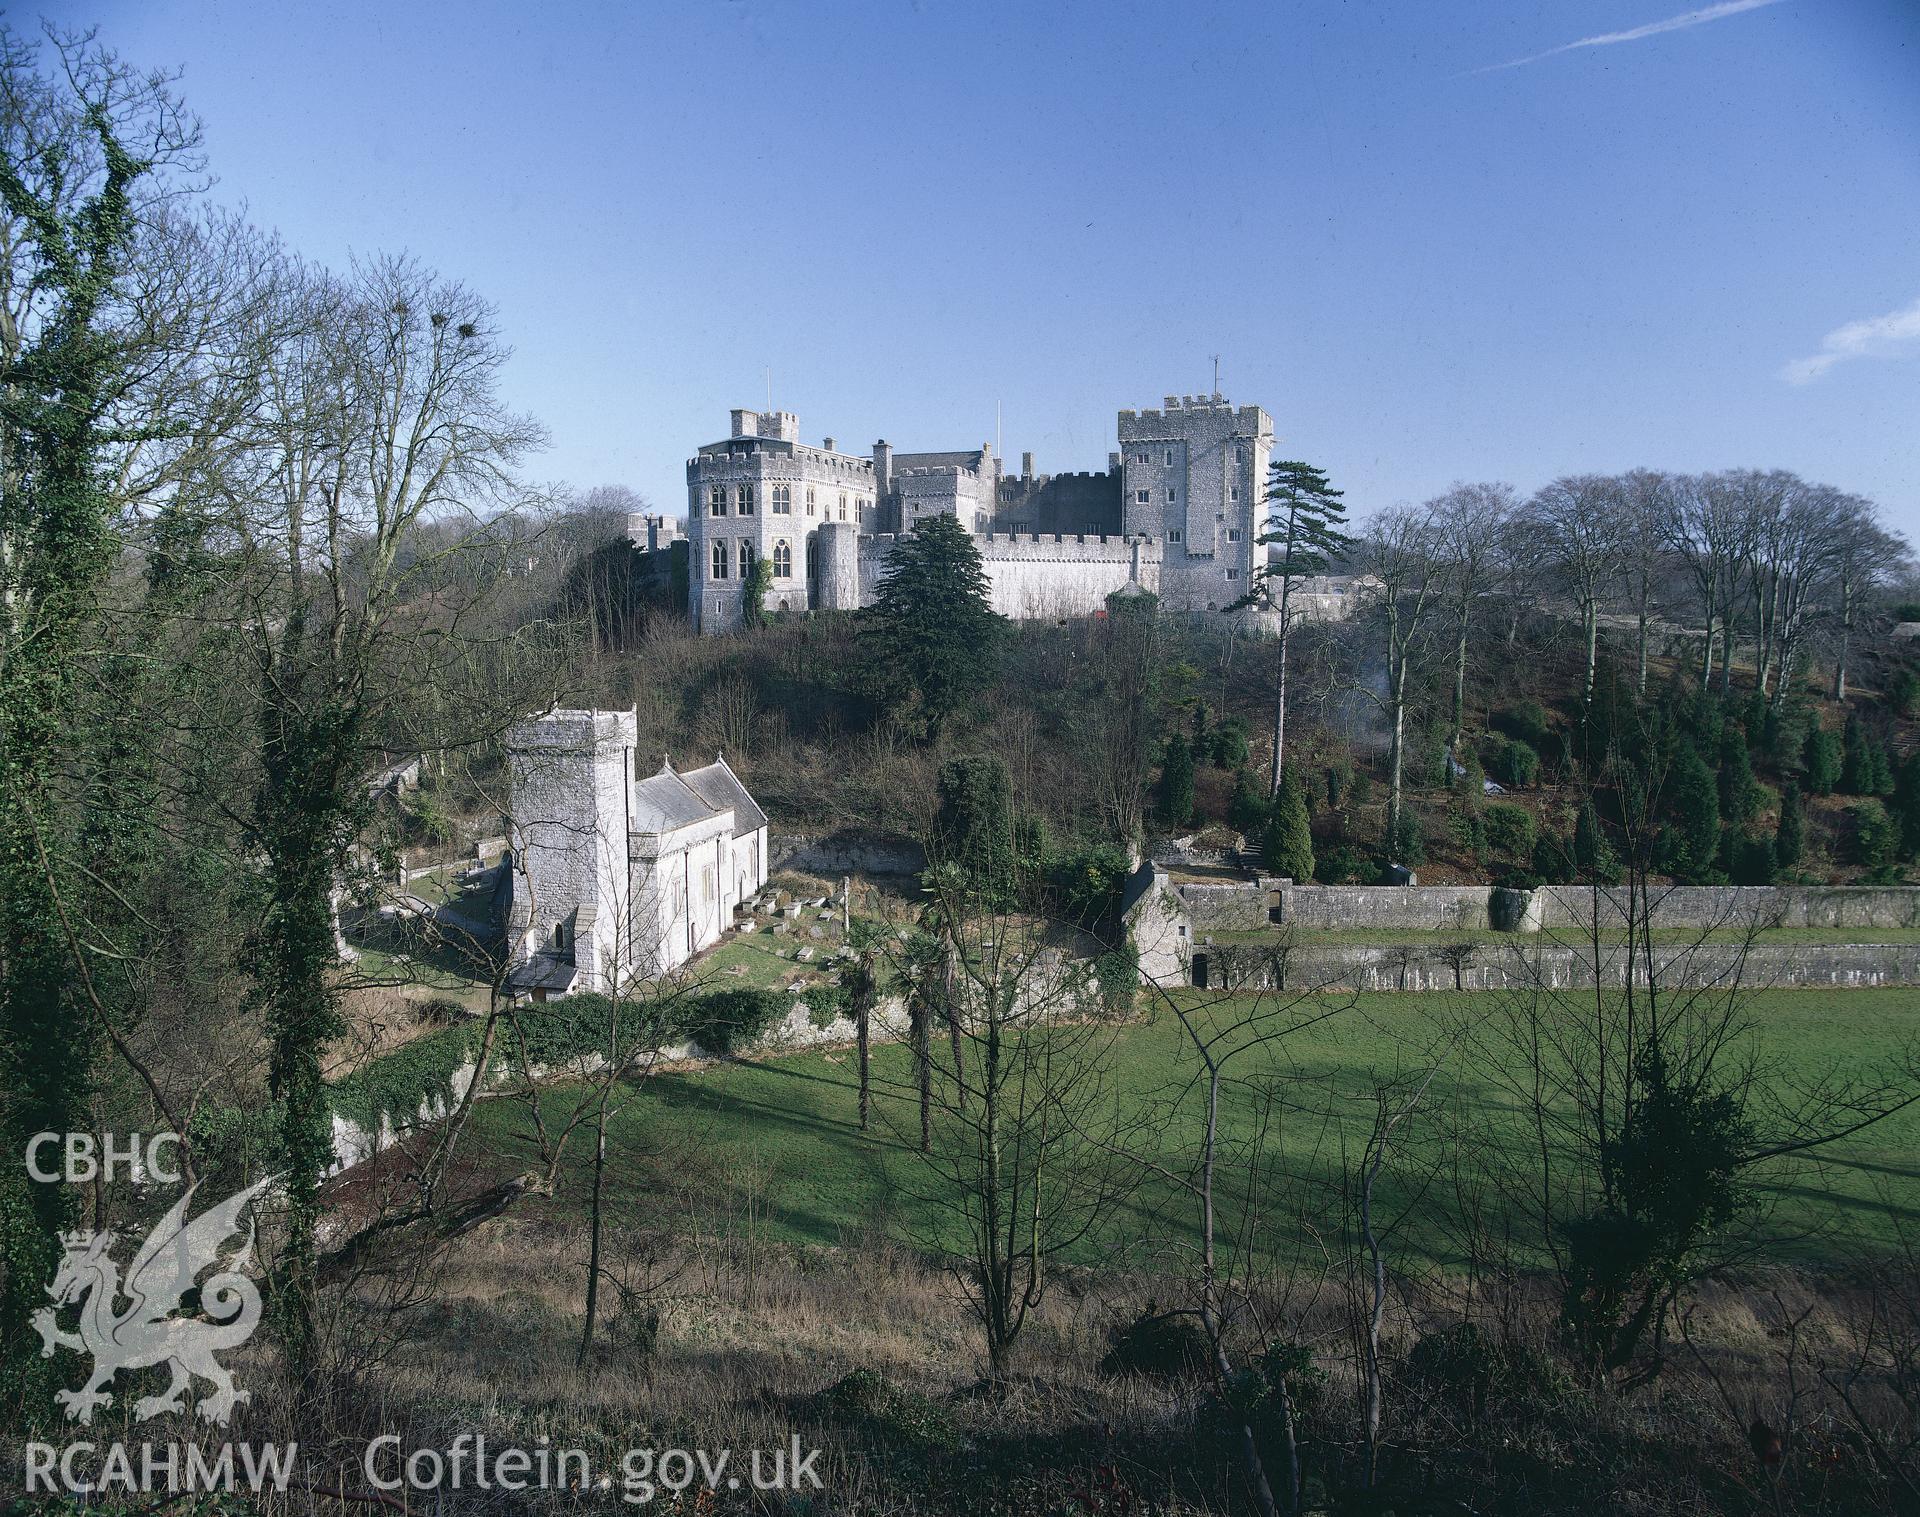 RCAHMW colour transparency showing St Donat's Castle.